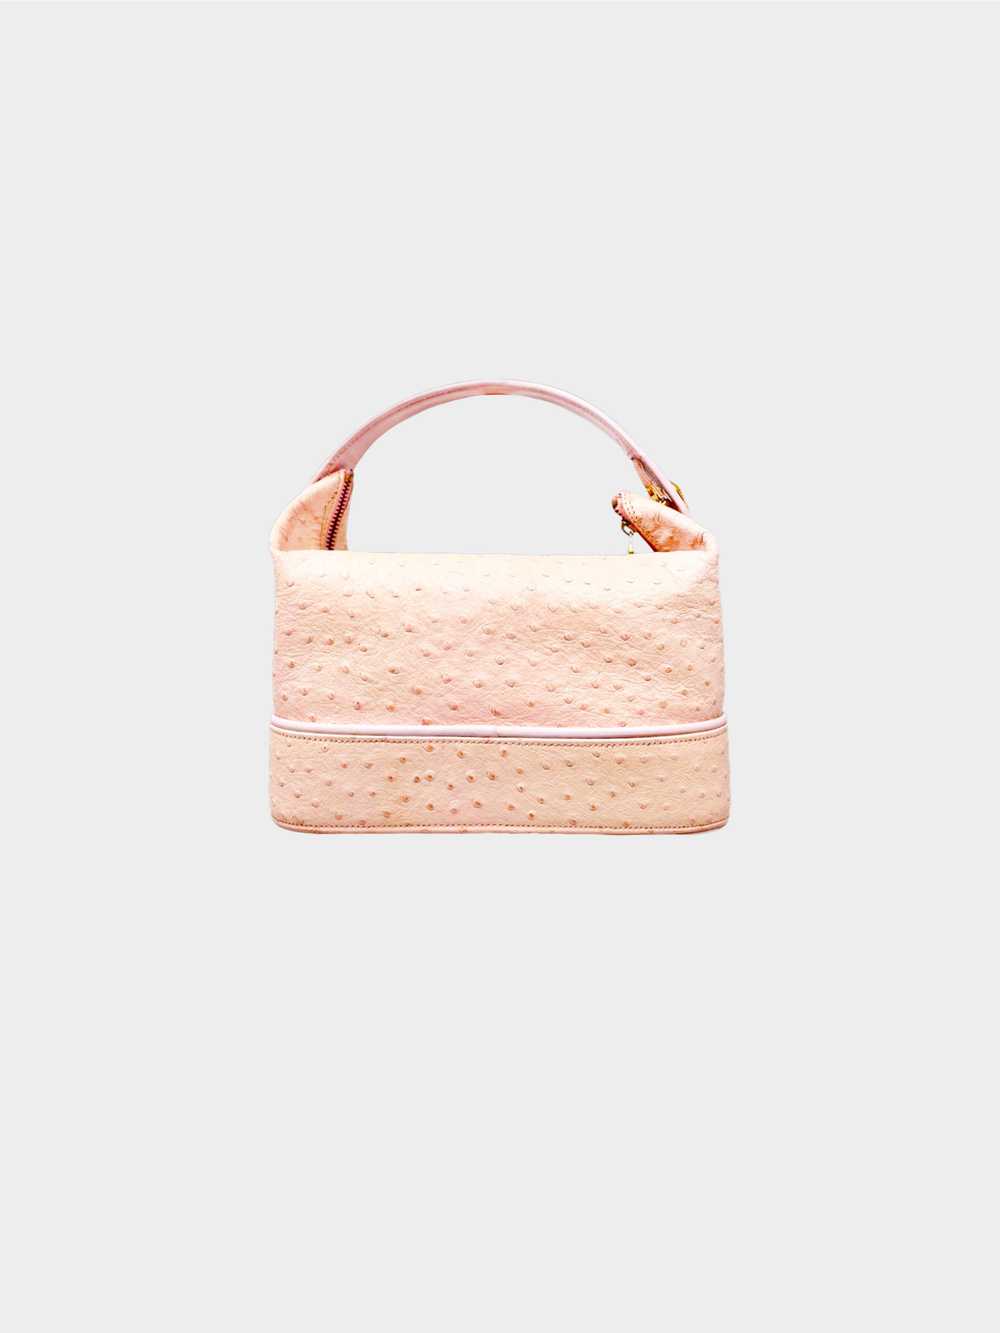 Versace 1990s Pink Vanity Ostrich Handbag - image 2